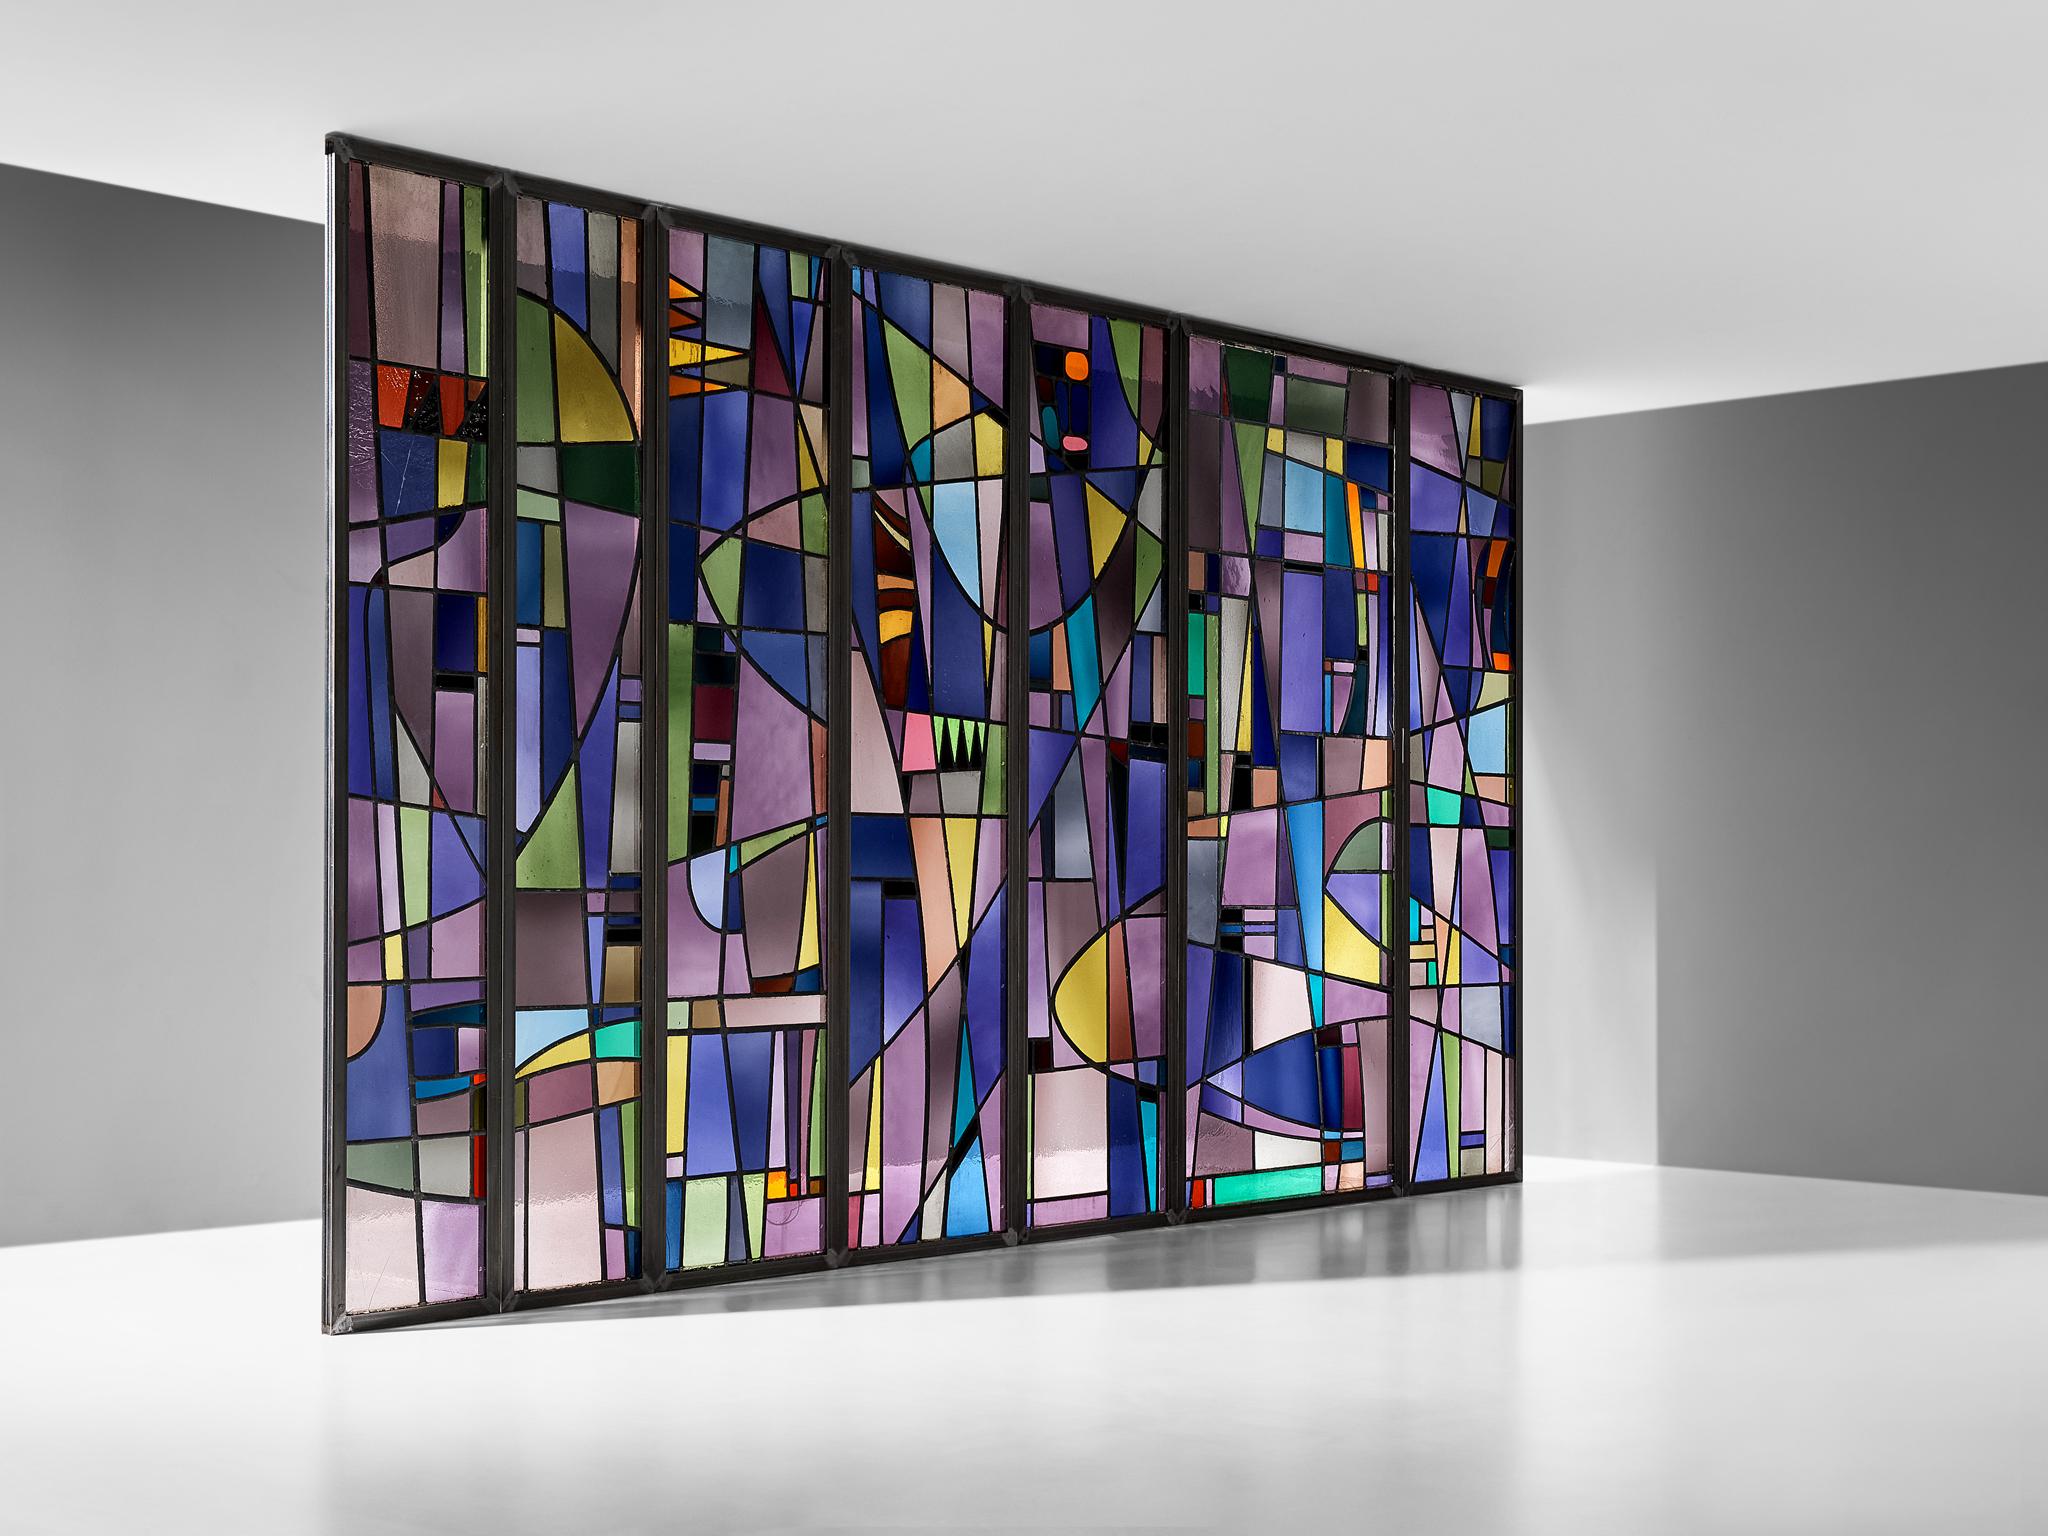 Rogier Vandeweghe, Buntglasscheiben, Raumteiler, Belgien, 1955-1956

Unverwechselbare Glasmalereien des belgischen Künstlers Rogier Vandeweghe, die von einer Abtei in Brügge in Auftrag gegeben wurden und für die Schule bestimmt waren. Dieses Stück